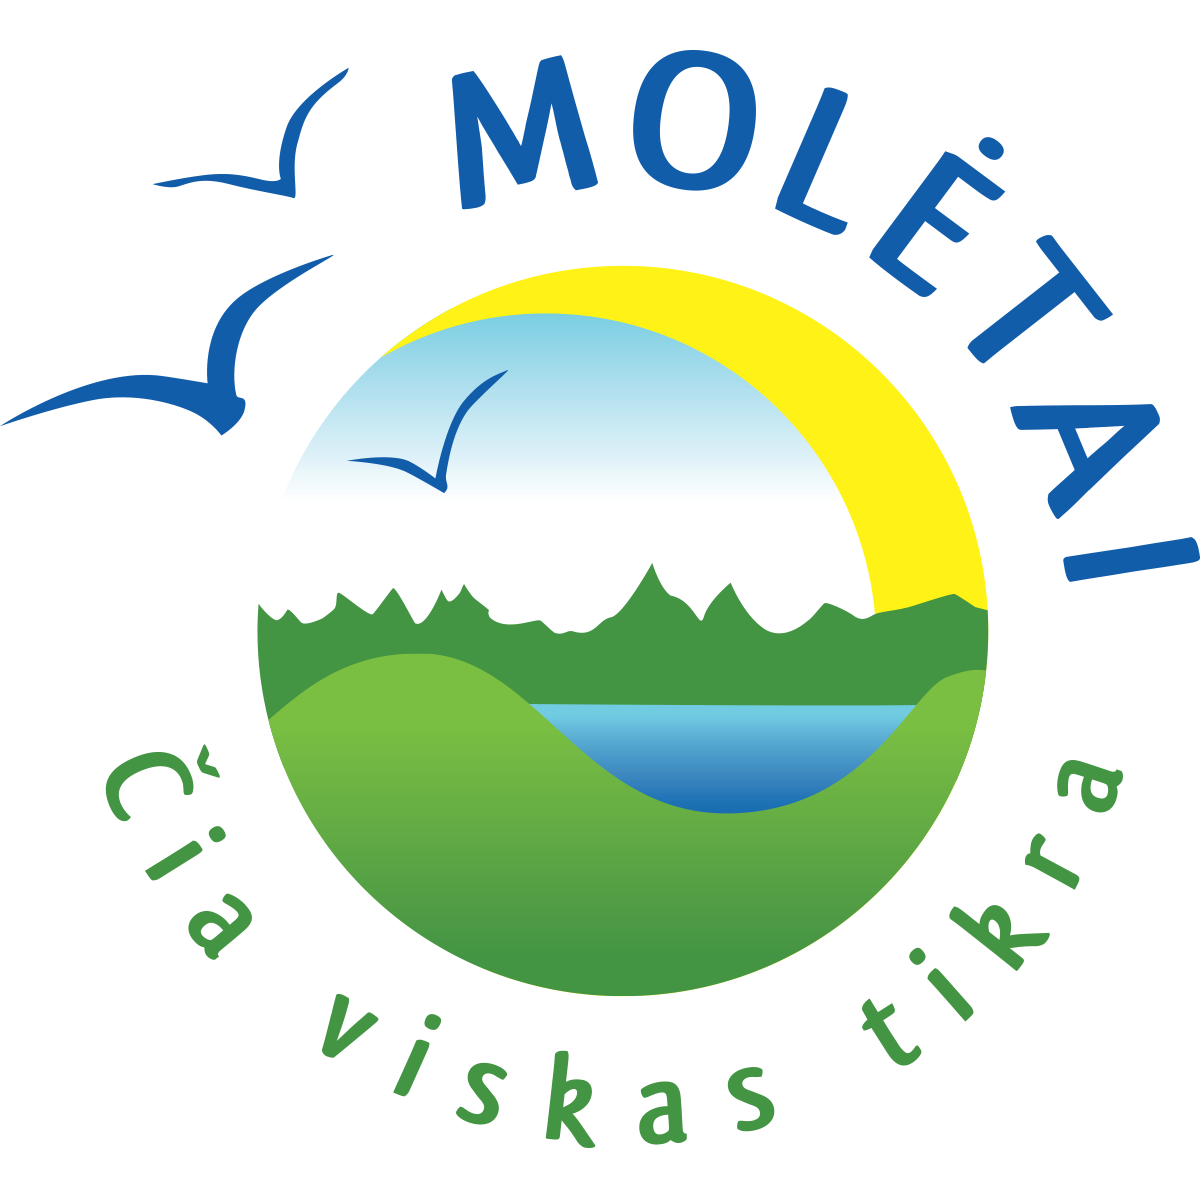 Moletai_zenklas